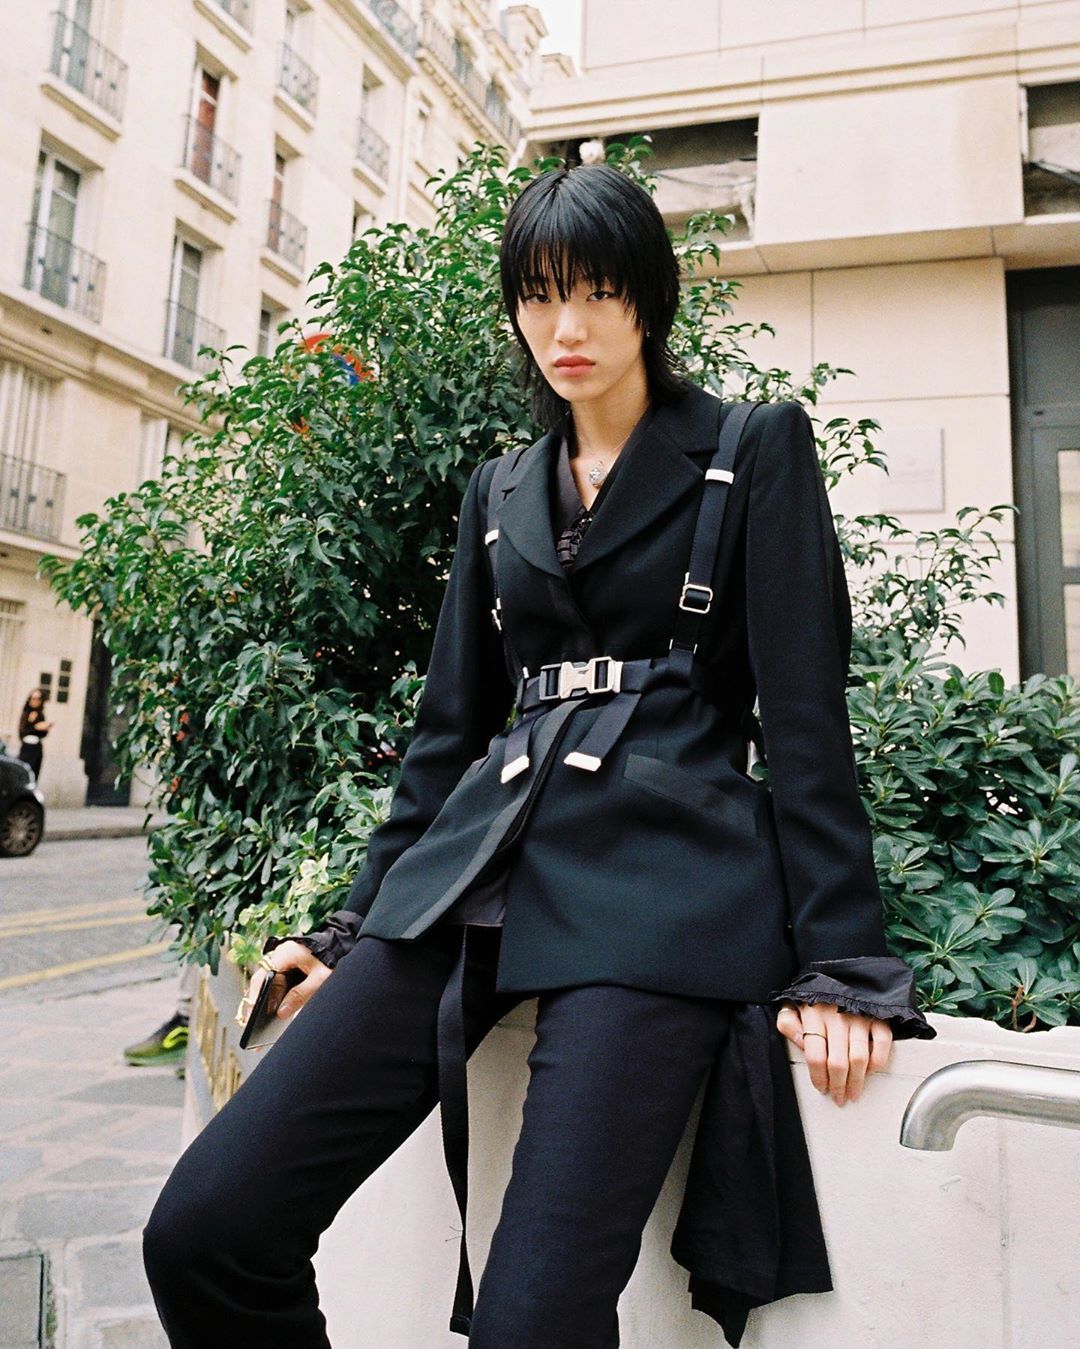 Paris FW 2020 Street Style: Sora Choi - STYLE DU MONDE